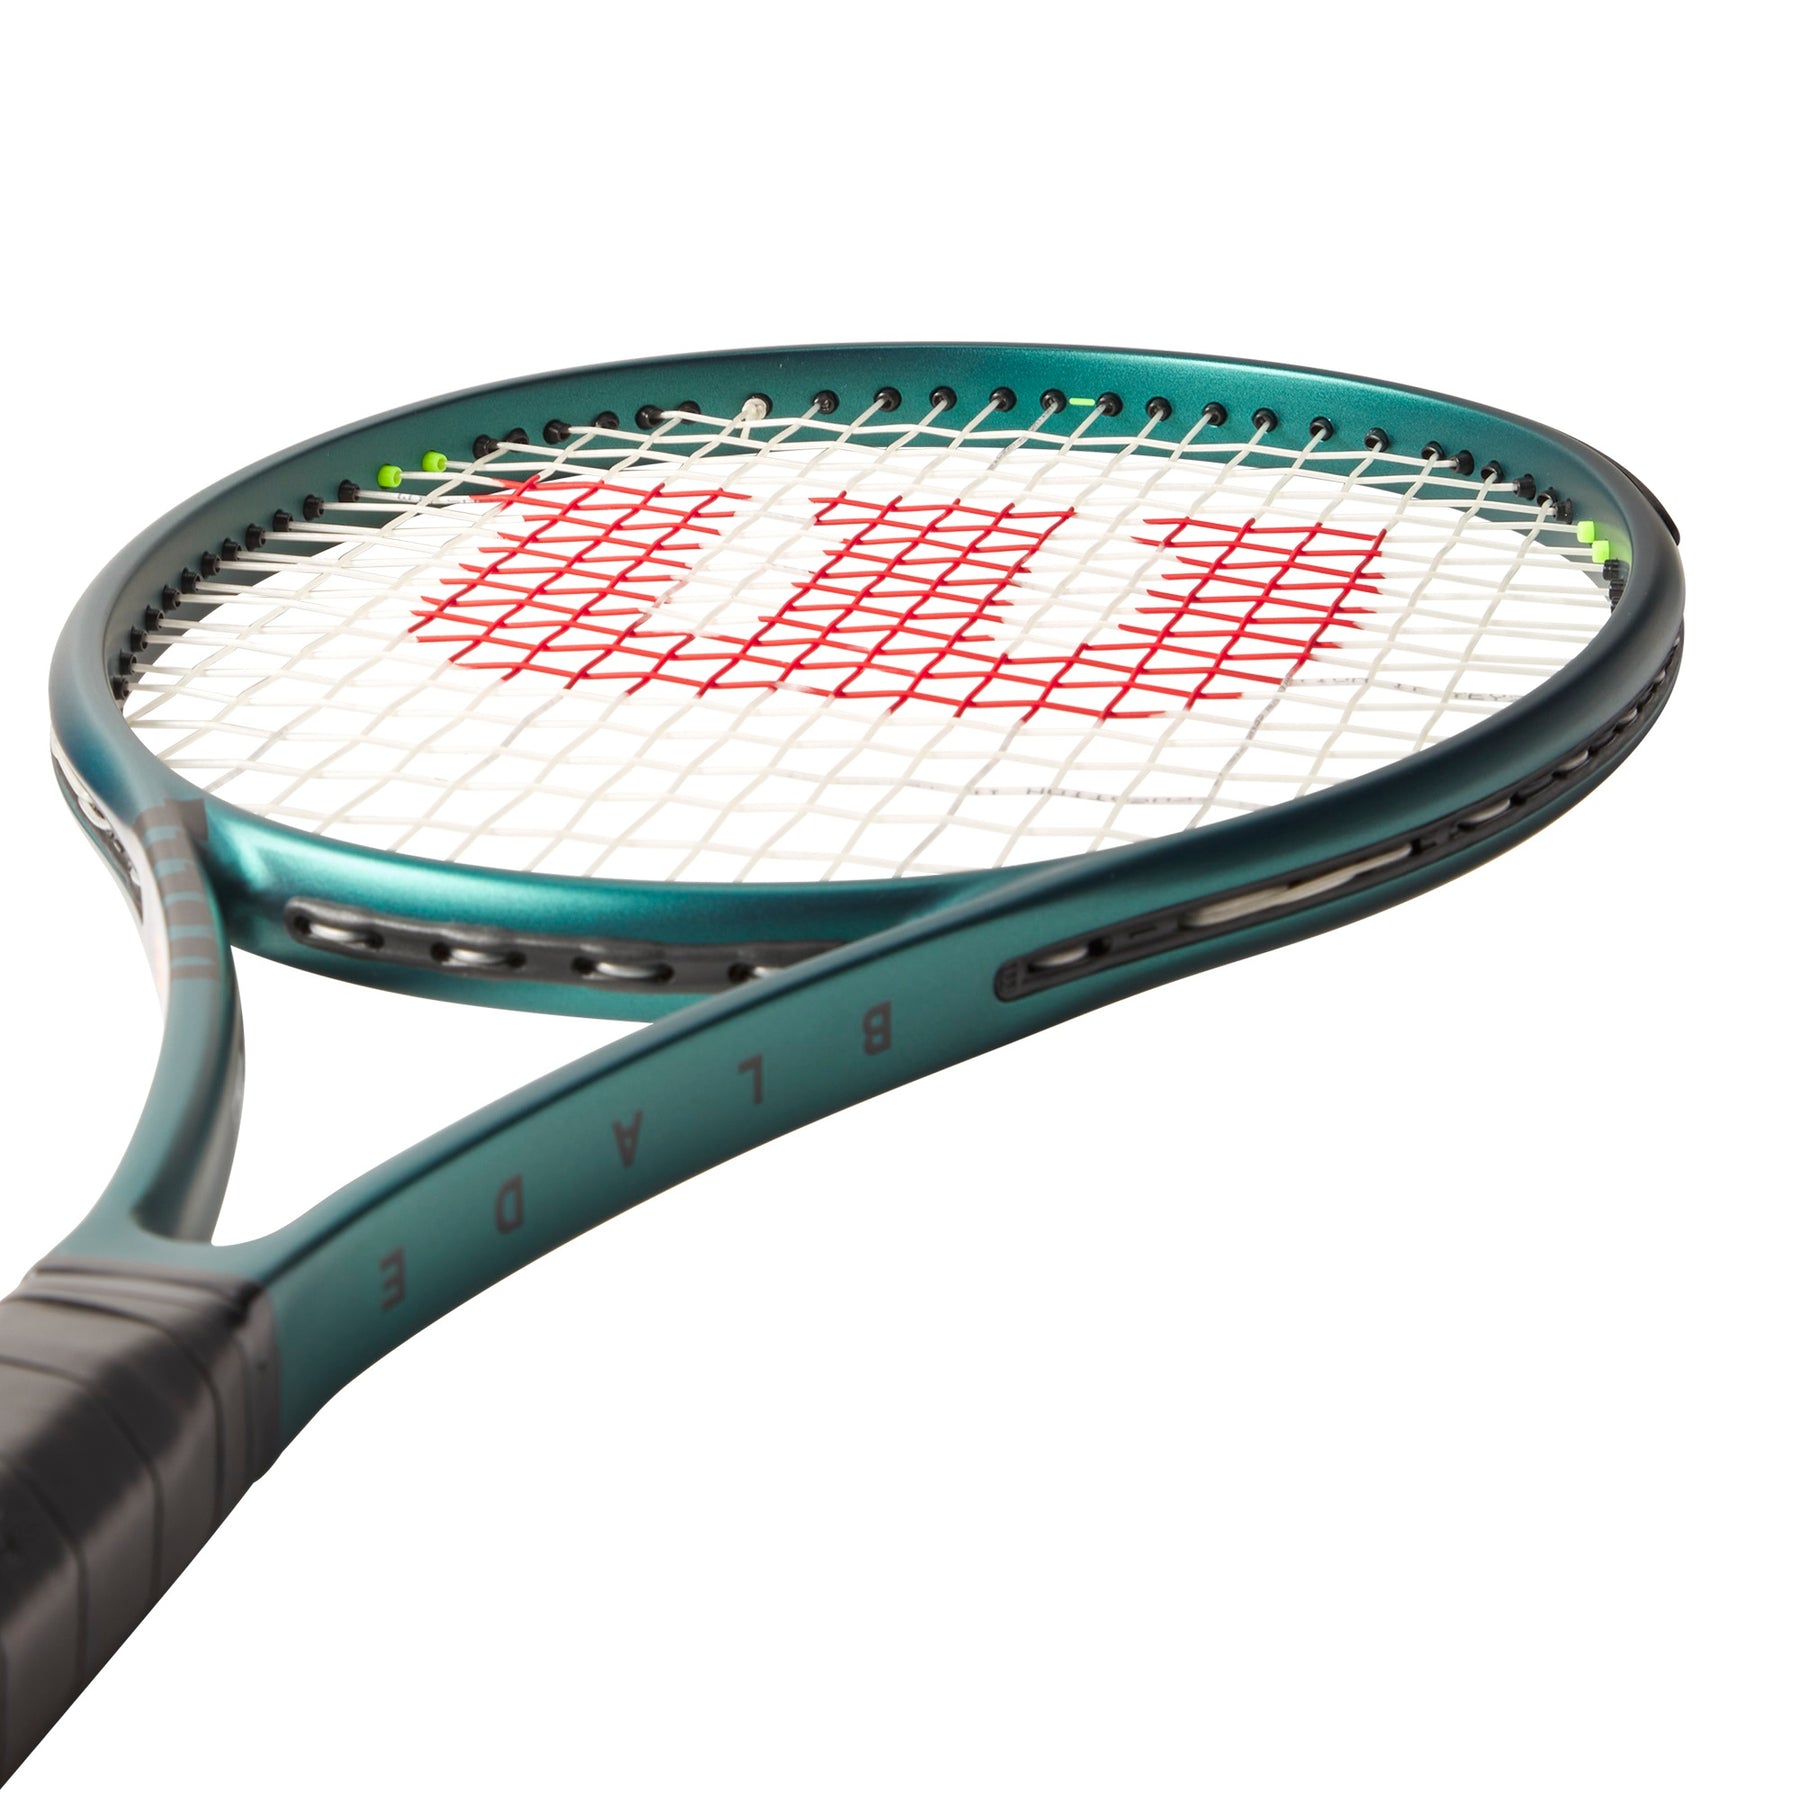 Raqueta de Tenis  Blade 98 (18x20) v9